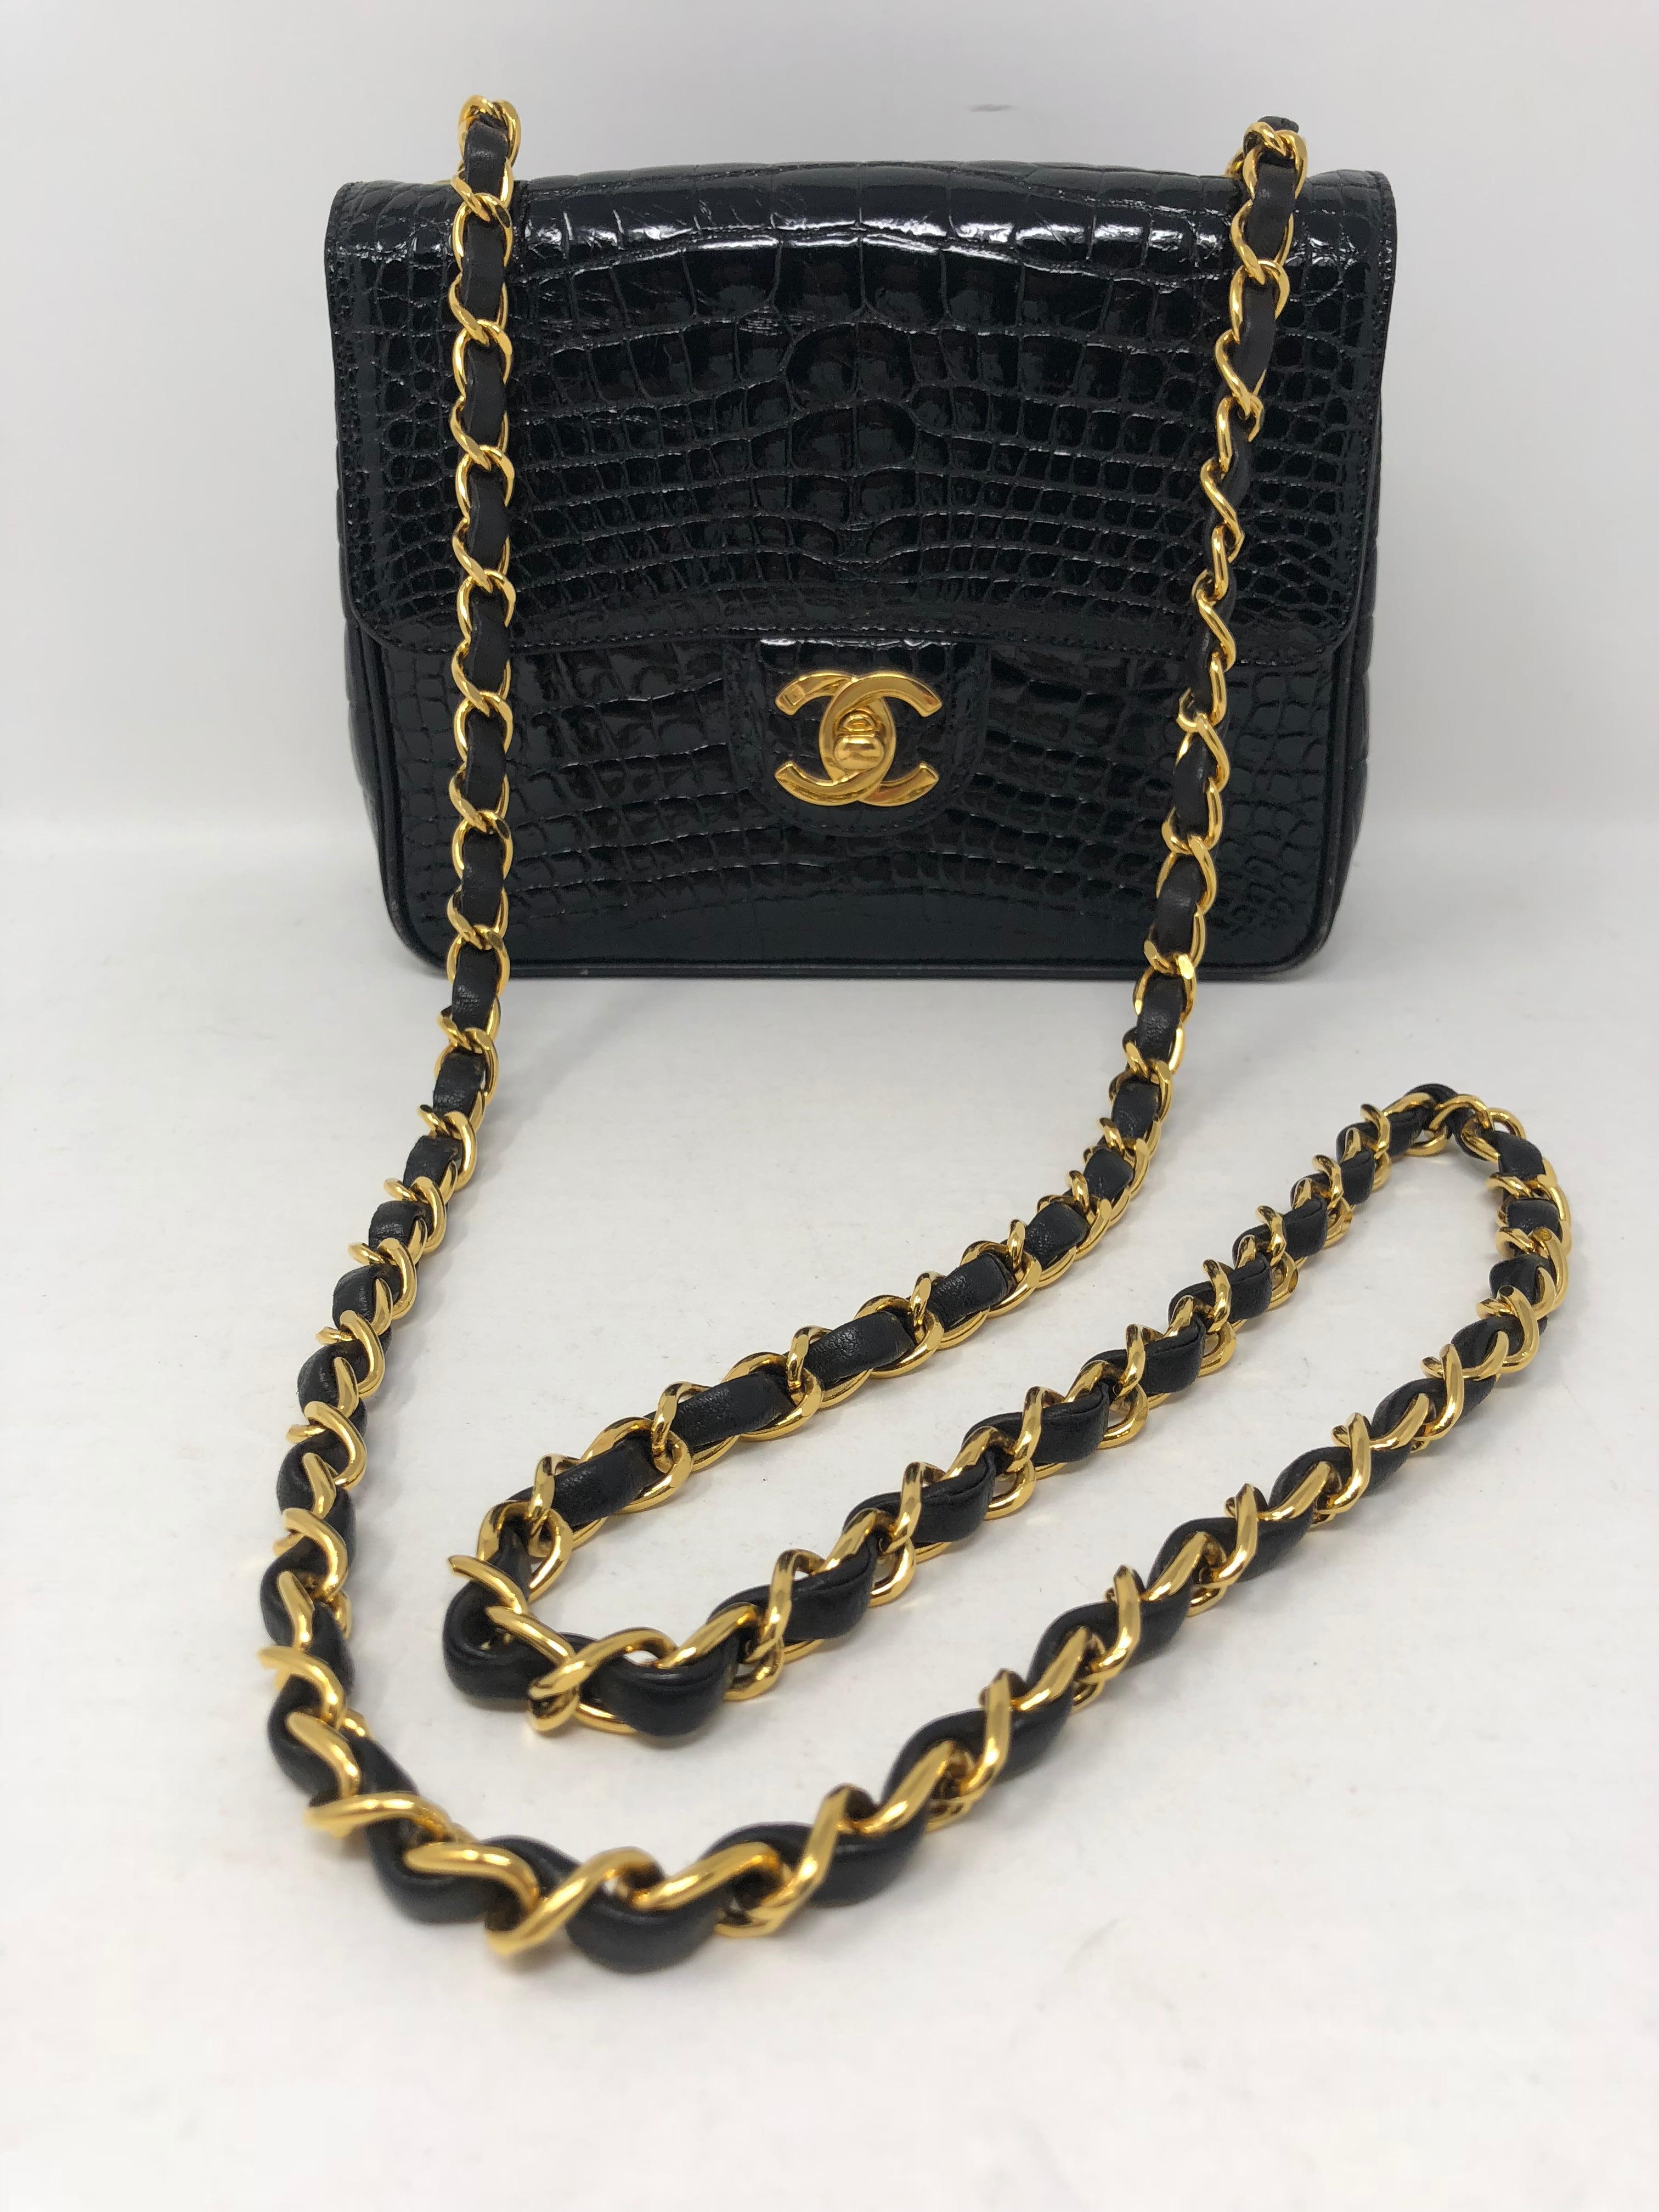 Chanel Krokodil-Tasche in Schwarz und mit Goldbeschlägen. Seltenes Mini-Format und sehr begehrtes Stück. Aufgrund der Felle ist es ein Sammlerstück. In ausgezeichnetem Zustand nur leichte Abnutzung an den Ecken:: die leicht aufgearbeitet werden